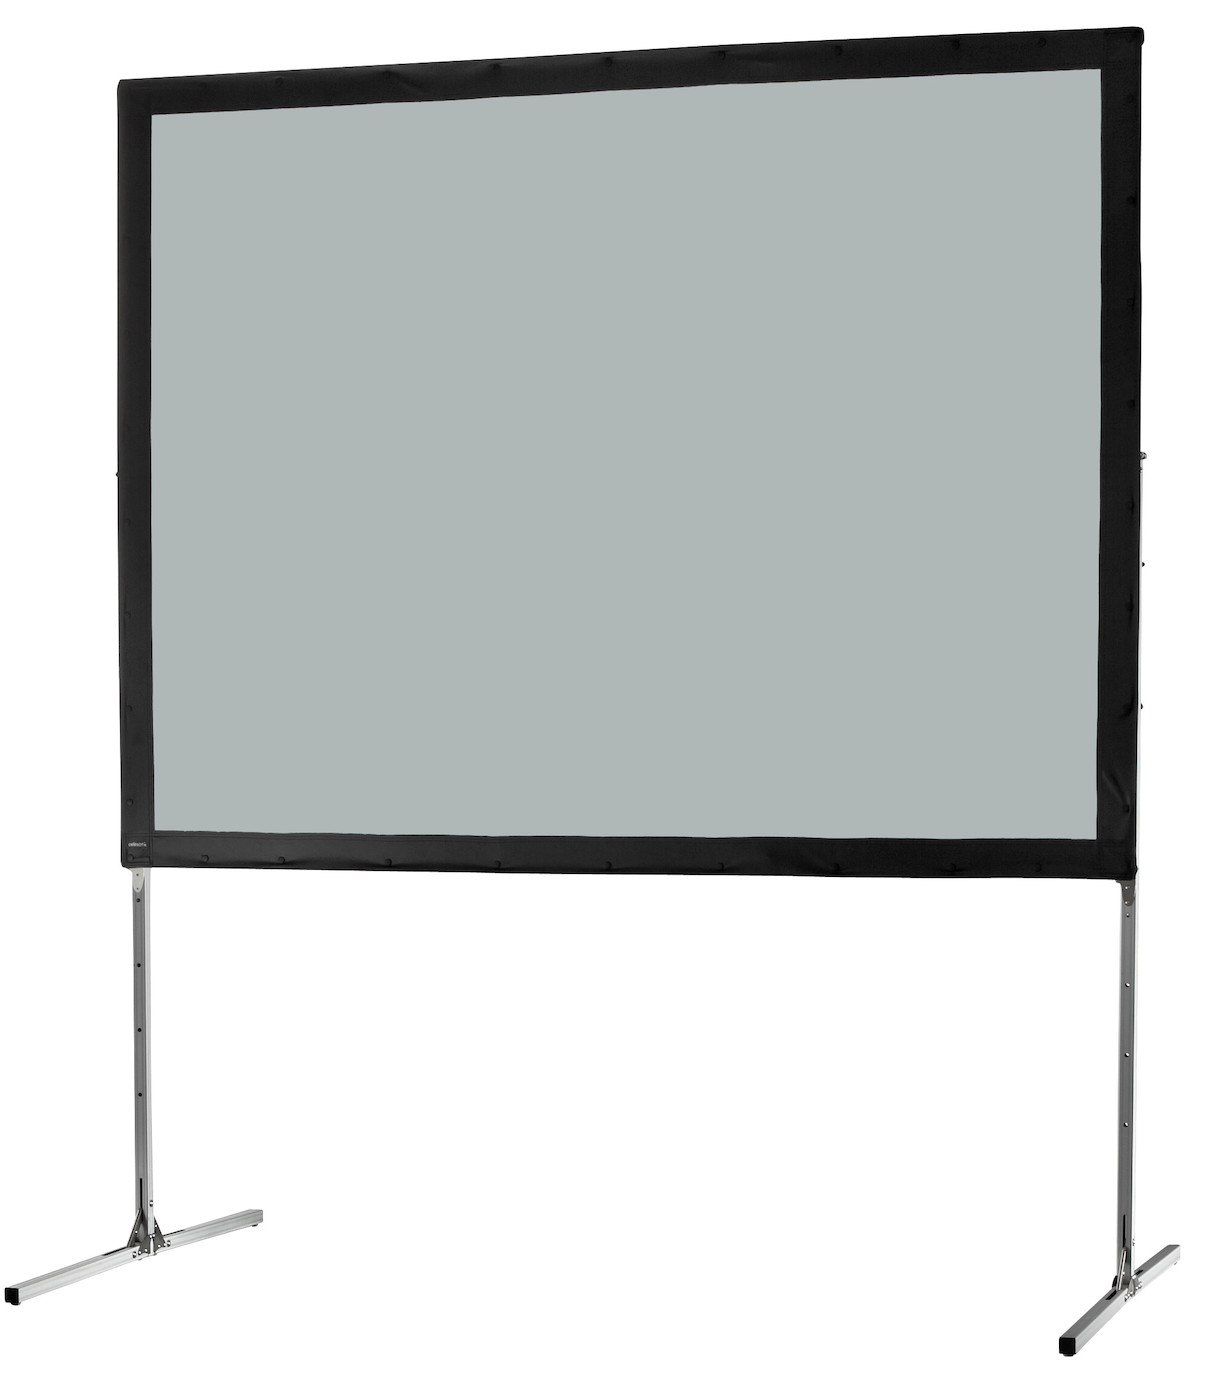 Ecran sur cadre celexon « Mobil Expert » 366 x 274 cm, projection par l'arrière